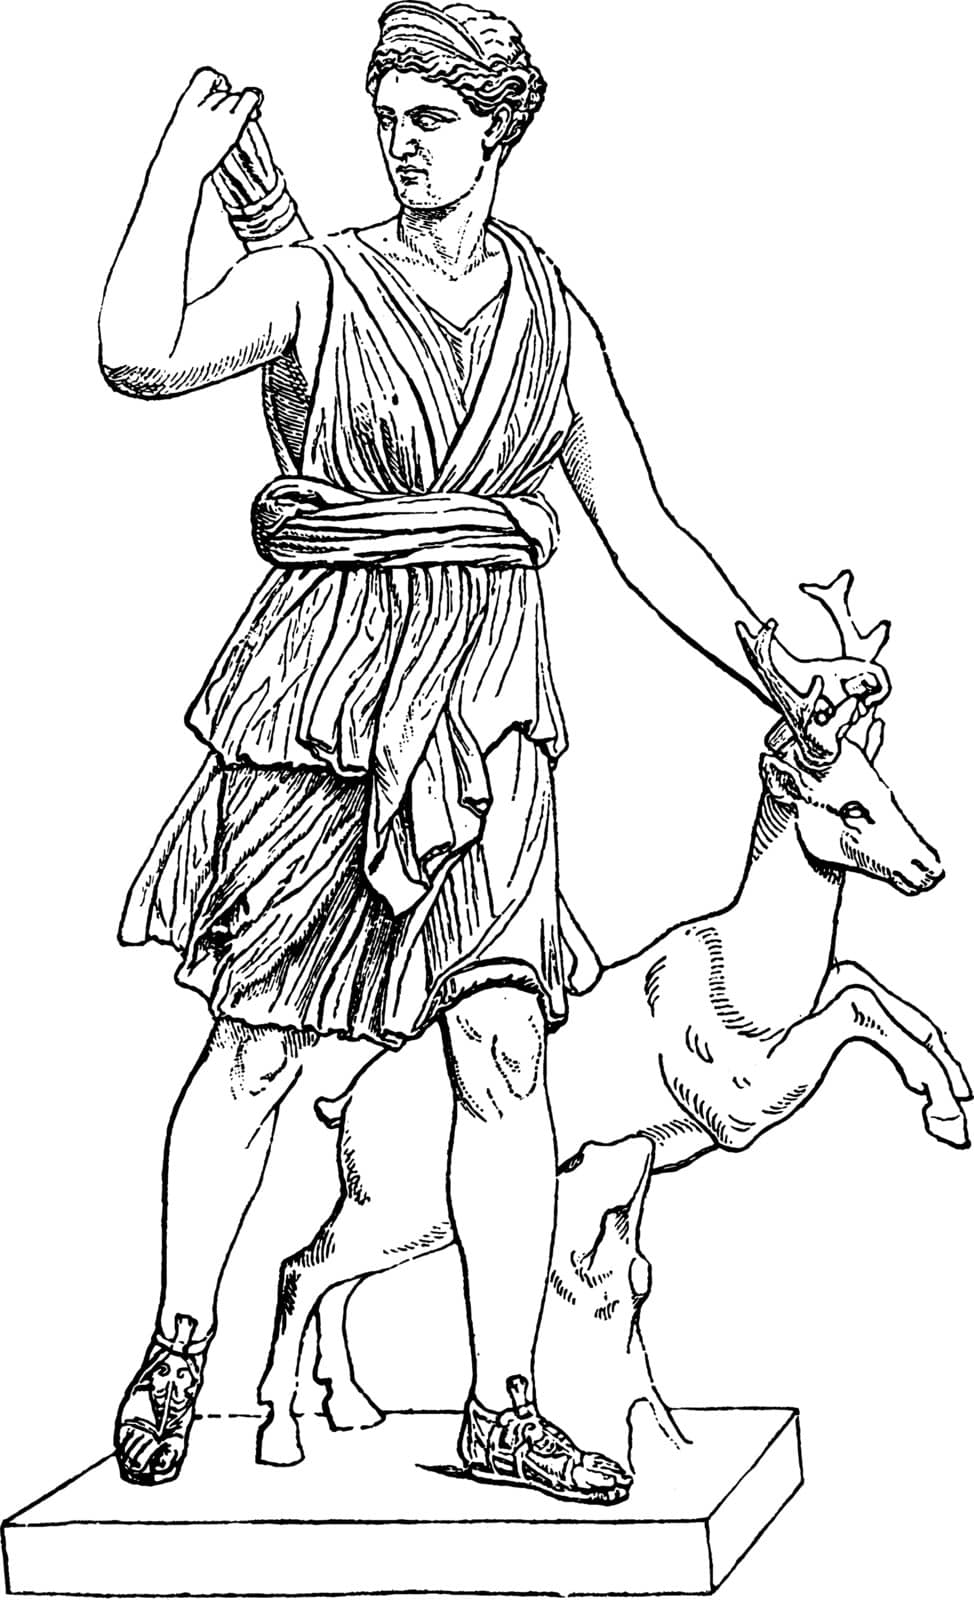 Artemis vintage illustration.  by Morphart